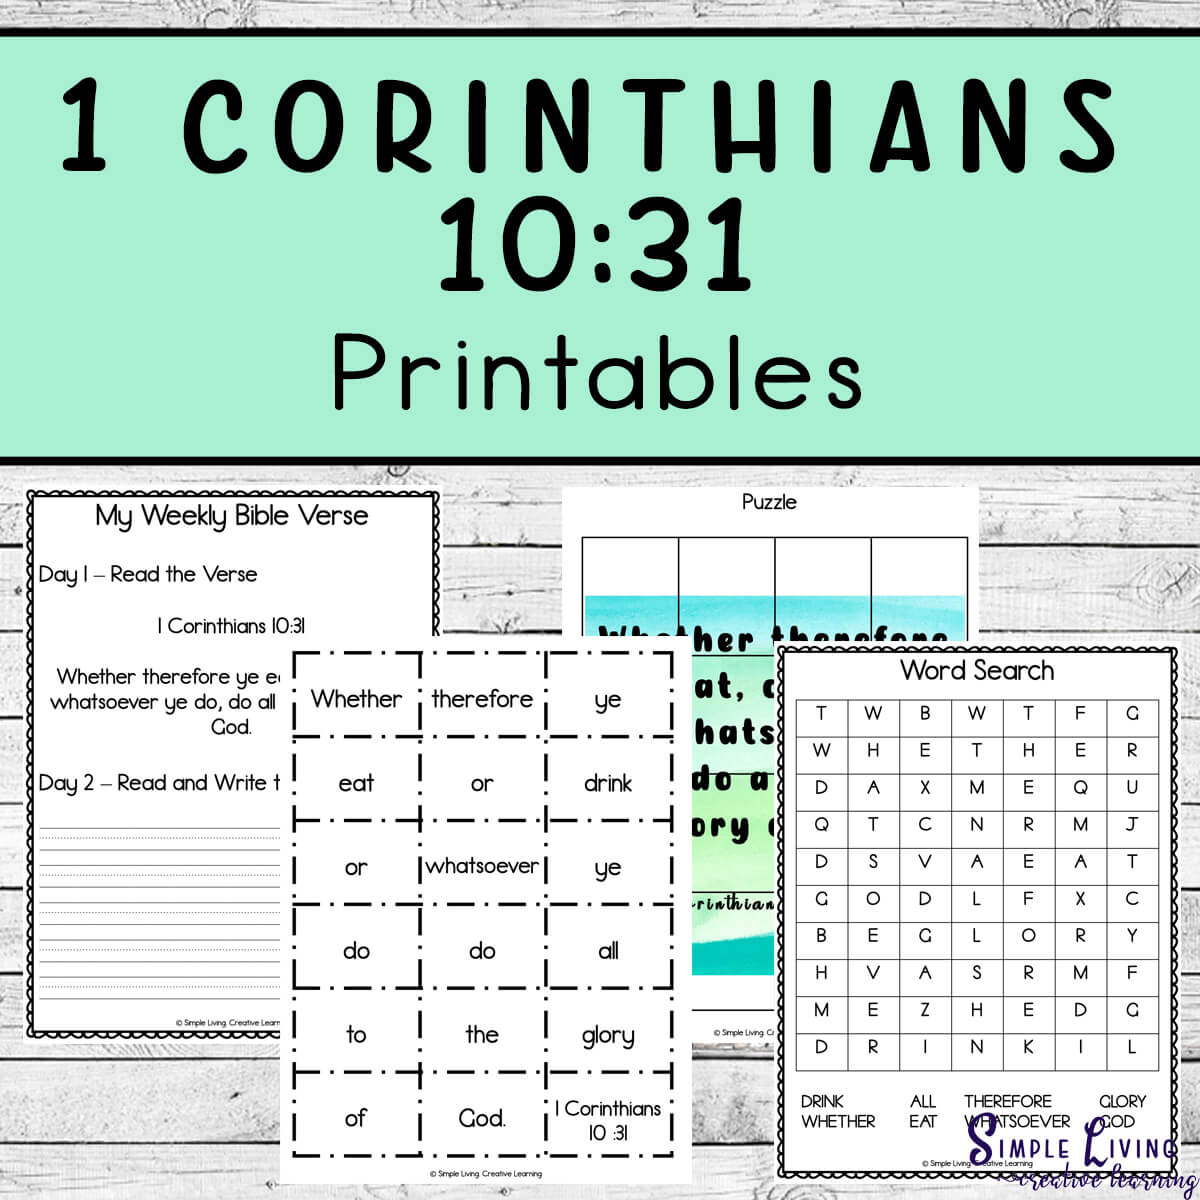 Monday Memory Verse: 1 Corinthians 10:31 Printables four pages